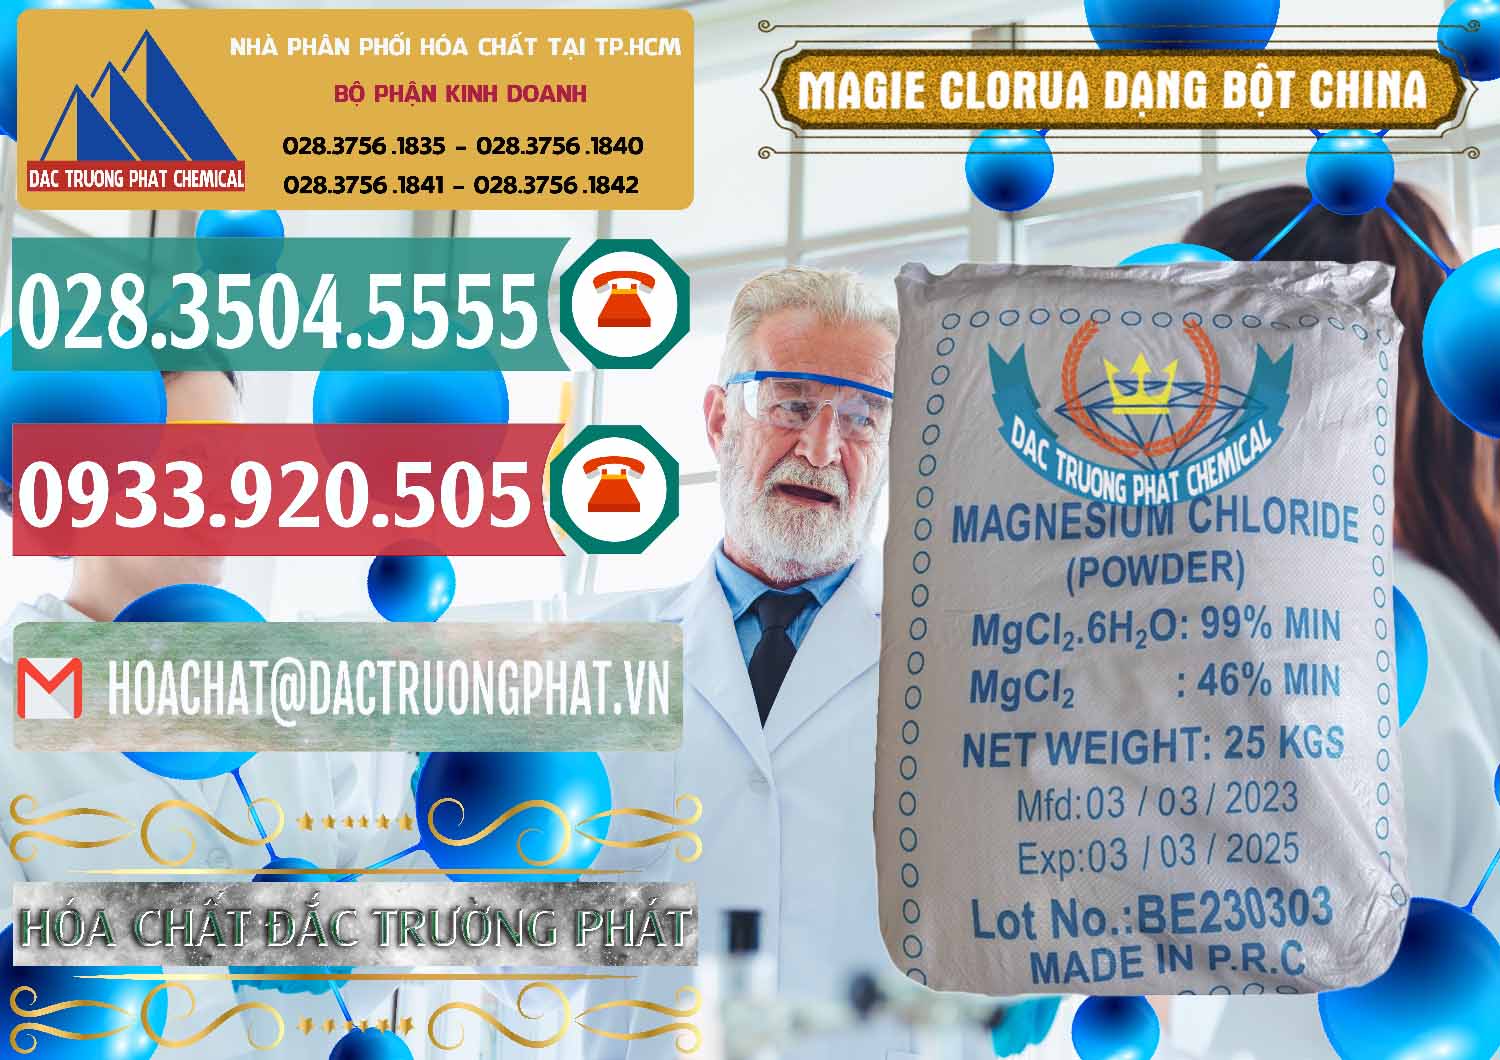 Cty nhập khẩu _ bán Magie Clorua – MGCL2 96% Dạng Bột Logo Kim Cương Trung Quốc China - 0387 - Cty cung cấp - phân phối hóa chất tại TP.HCM - muabanhoachat.vn